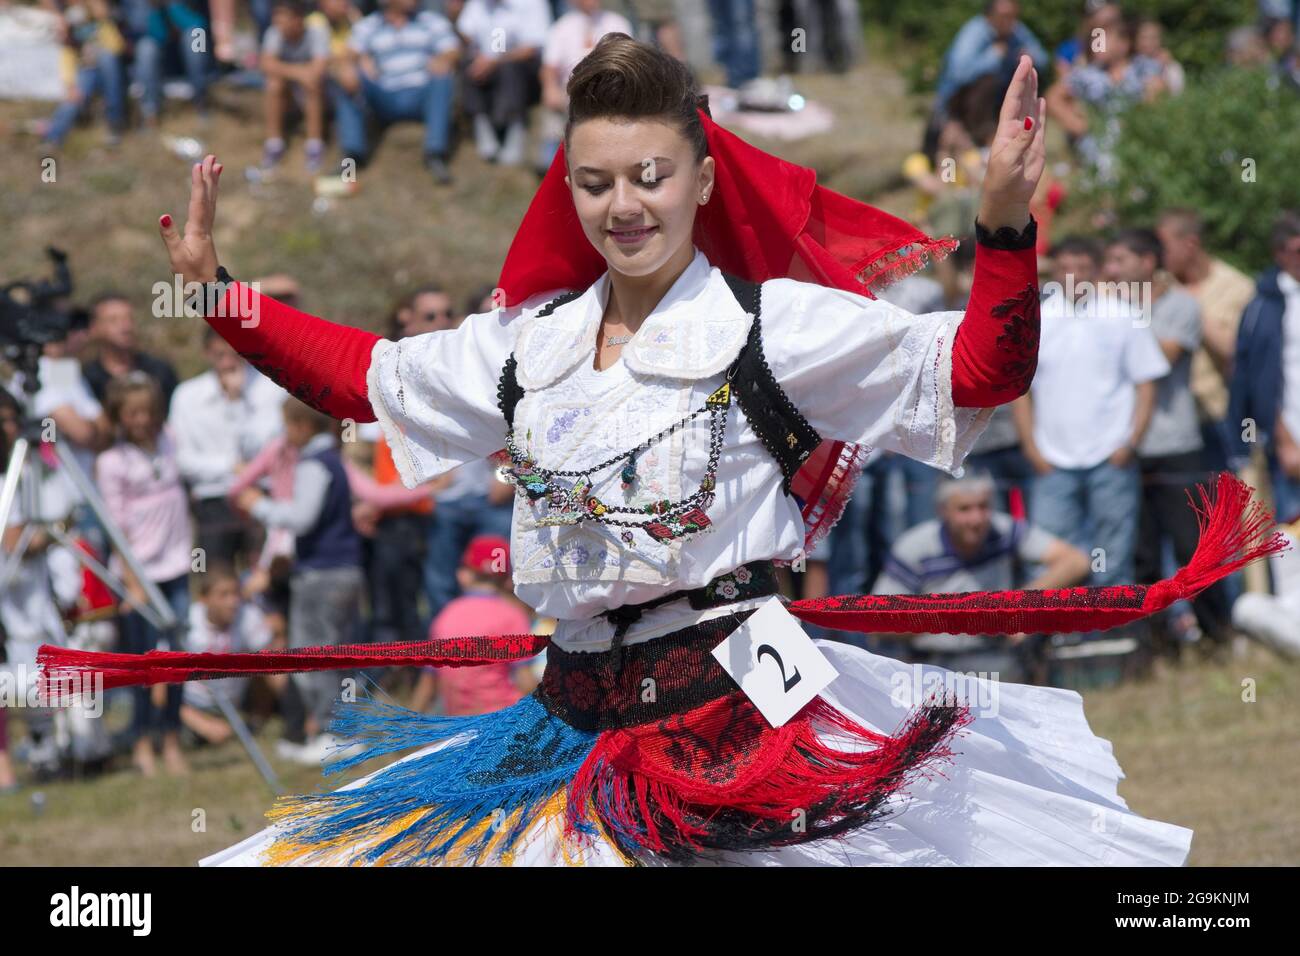 Lepushe, Albanien - 11. August 2012: Hübsches Mädchen tanzt mit den in traditioneller Albaner gekleideten Mädchen beim Klang traditioneller Musik und nimmt daran Teil Stockfoto